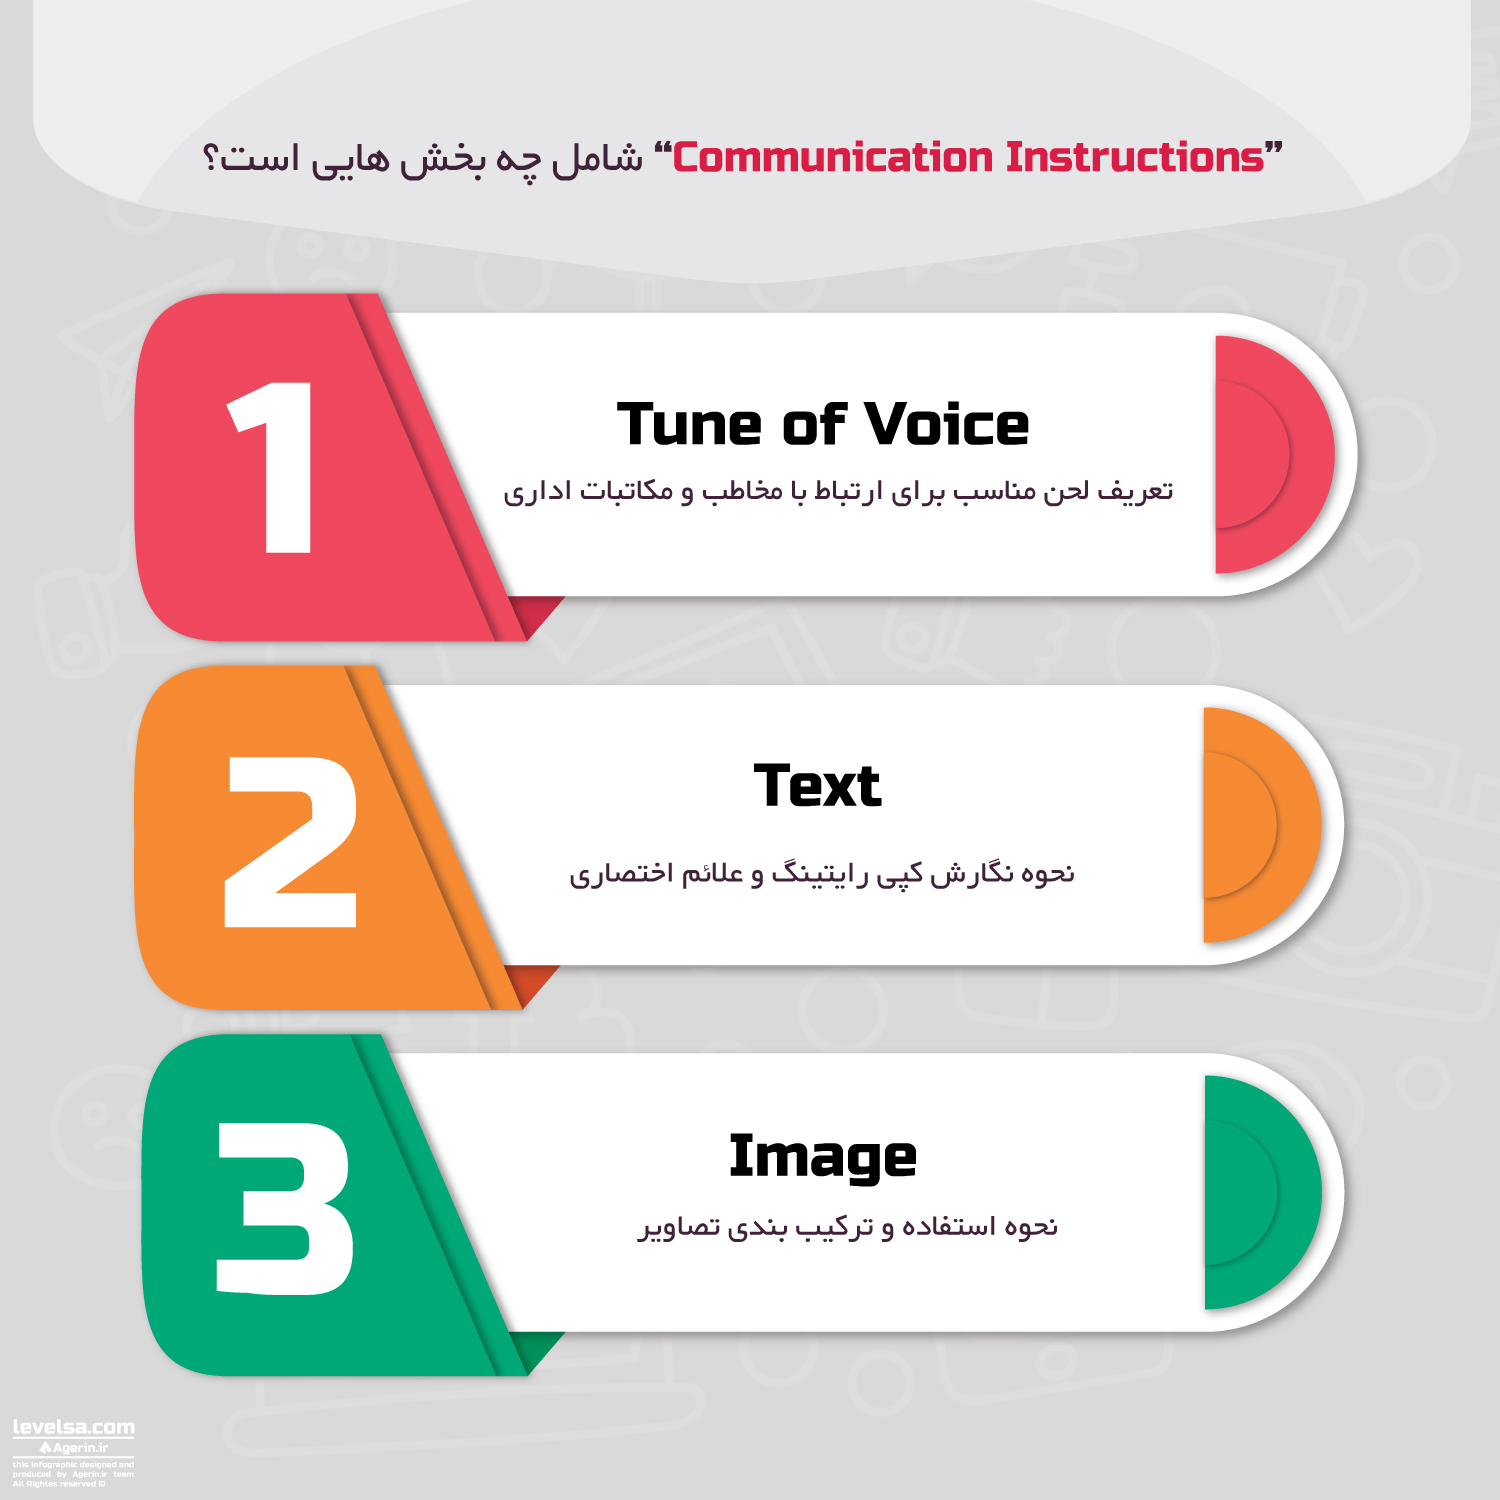 اینفوگرافیک بخش Communication Instructions در برندبوک